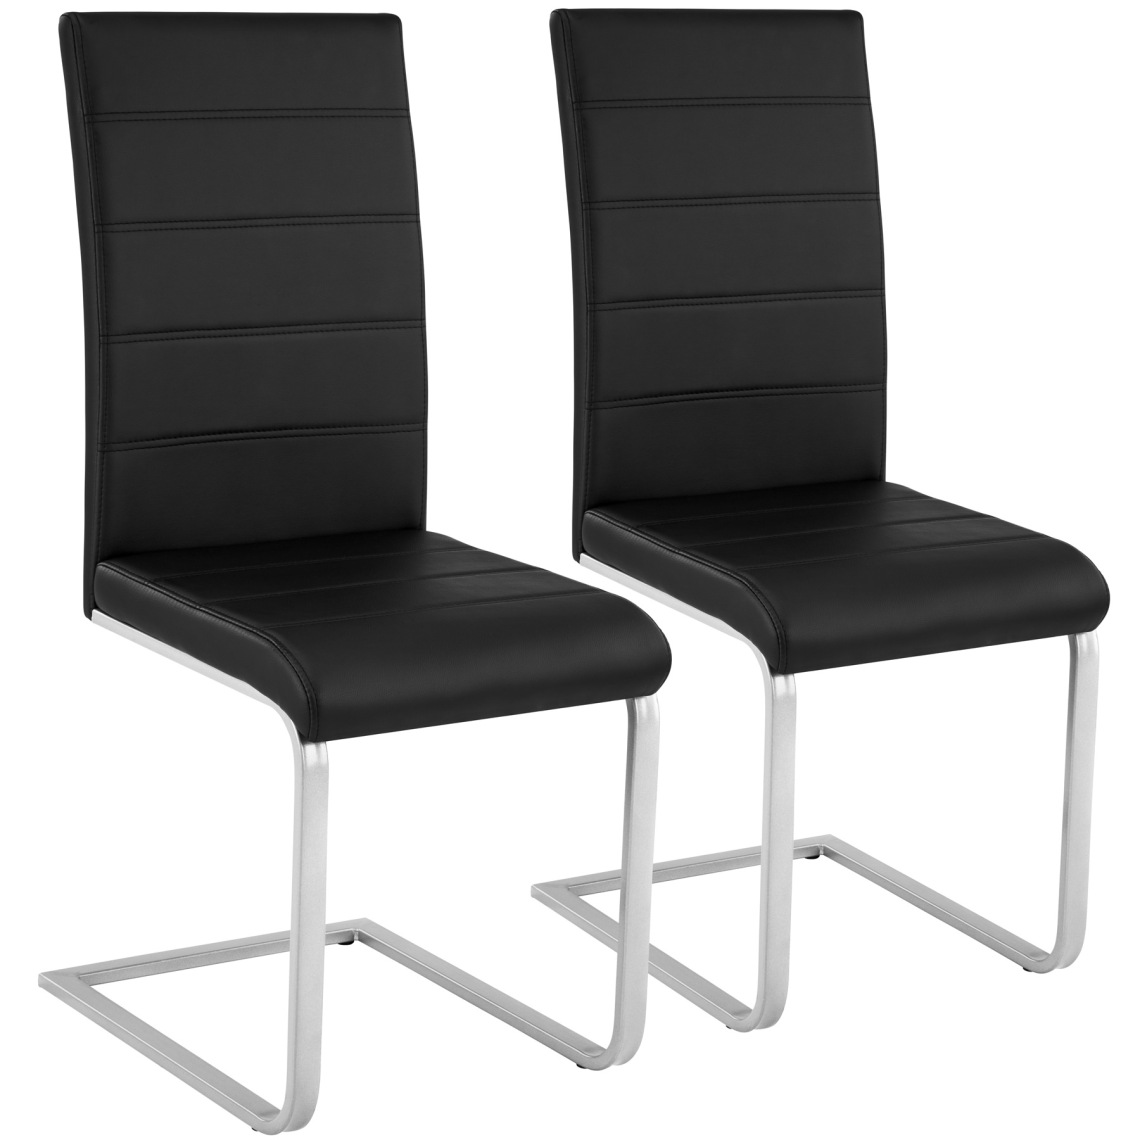 Tectake - 2 Chaises de Salle à Manger BETTINA Rembourrées Pieds en métal Argentés Design Moderne - noir - Chaises